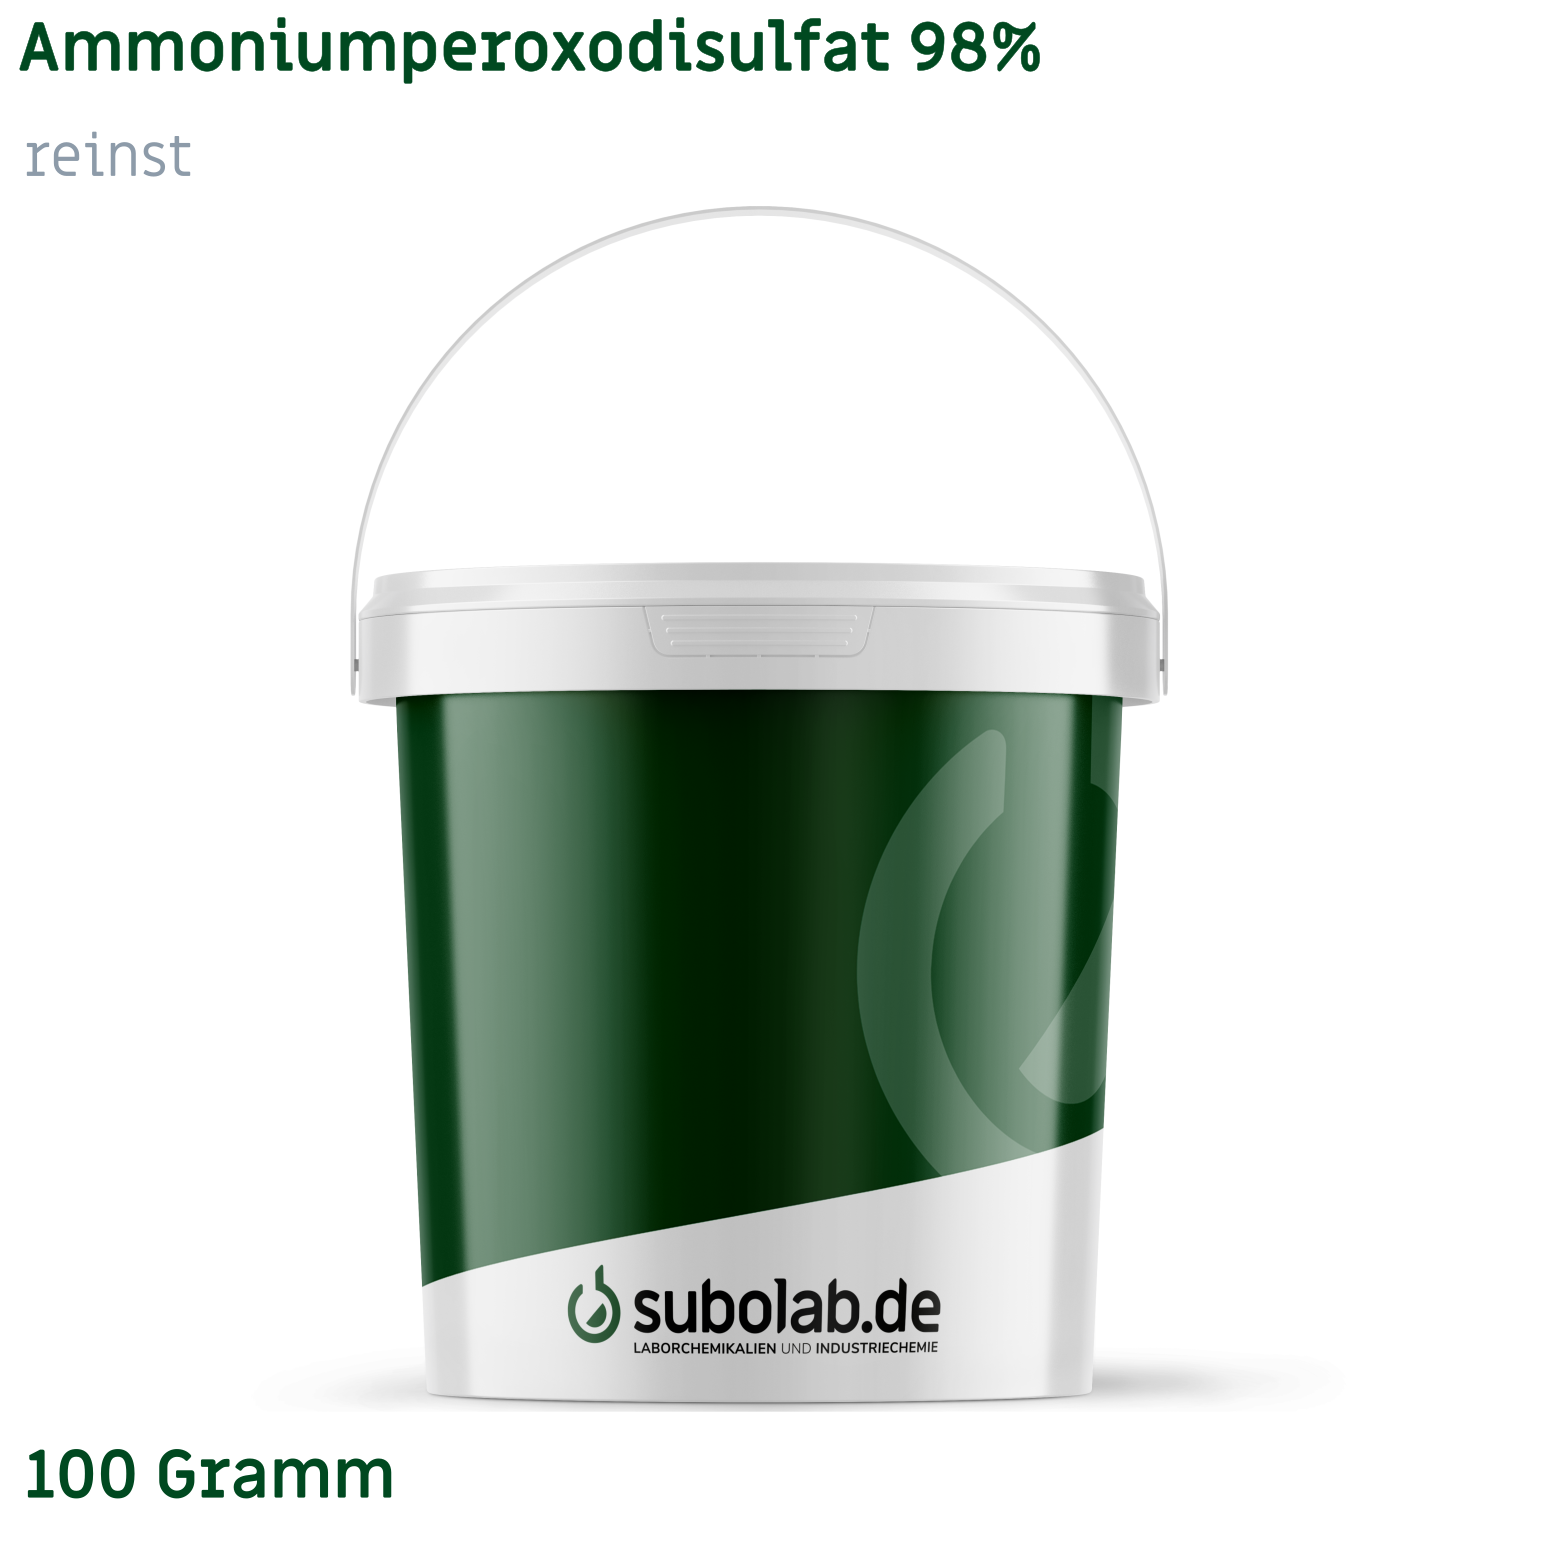 Bild von Ammoniumperoxodisulfat 98% reinst (100 Gramm)